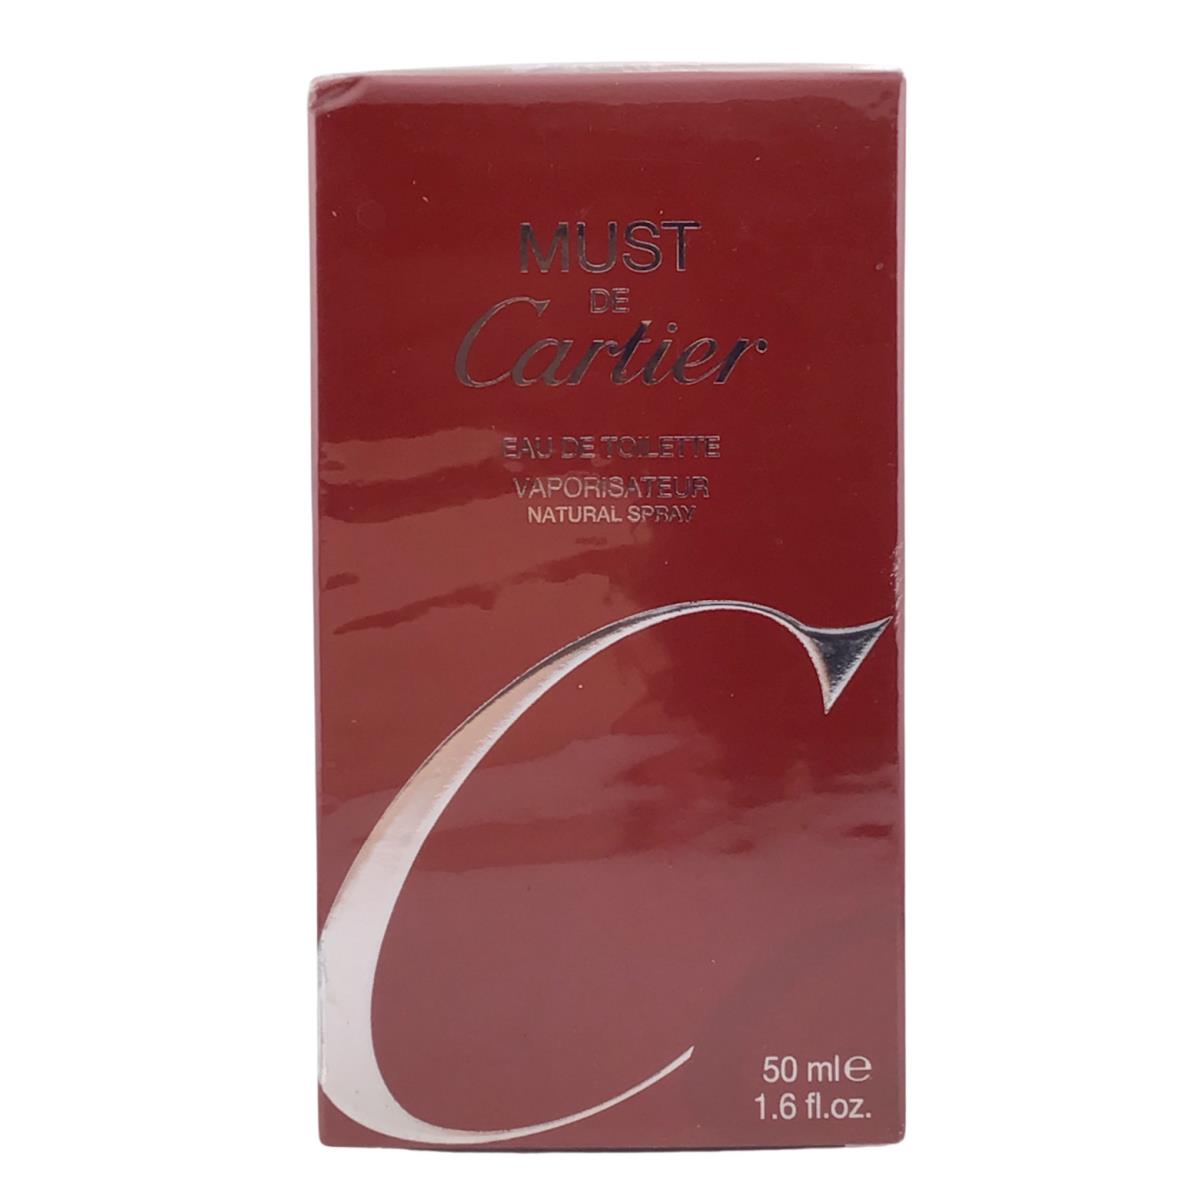 Must de Cartier Eau de Toilette Natural Spray 50 mL/1.6 fl oz Fast